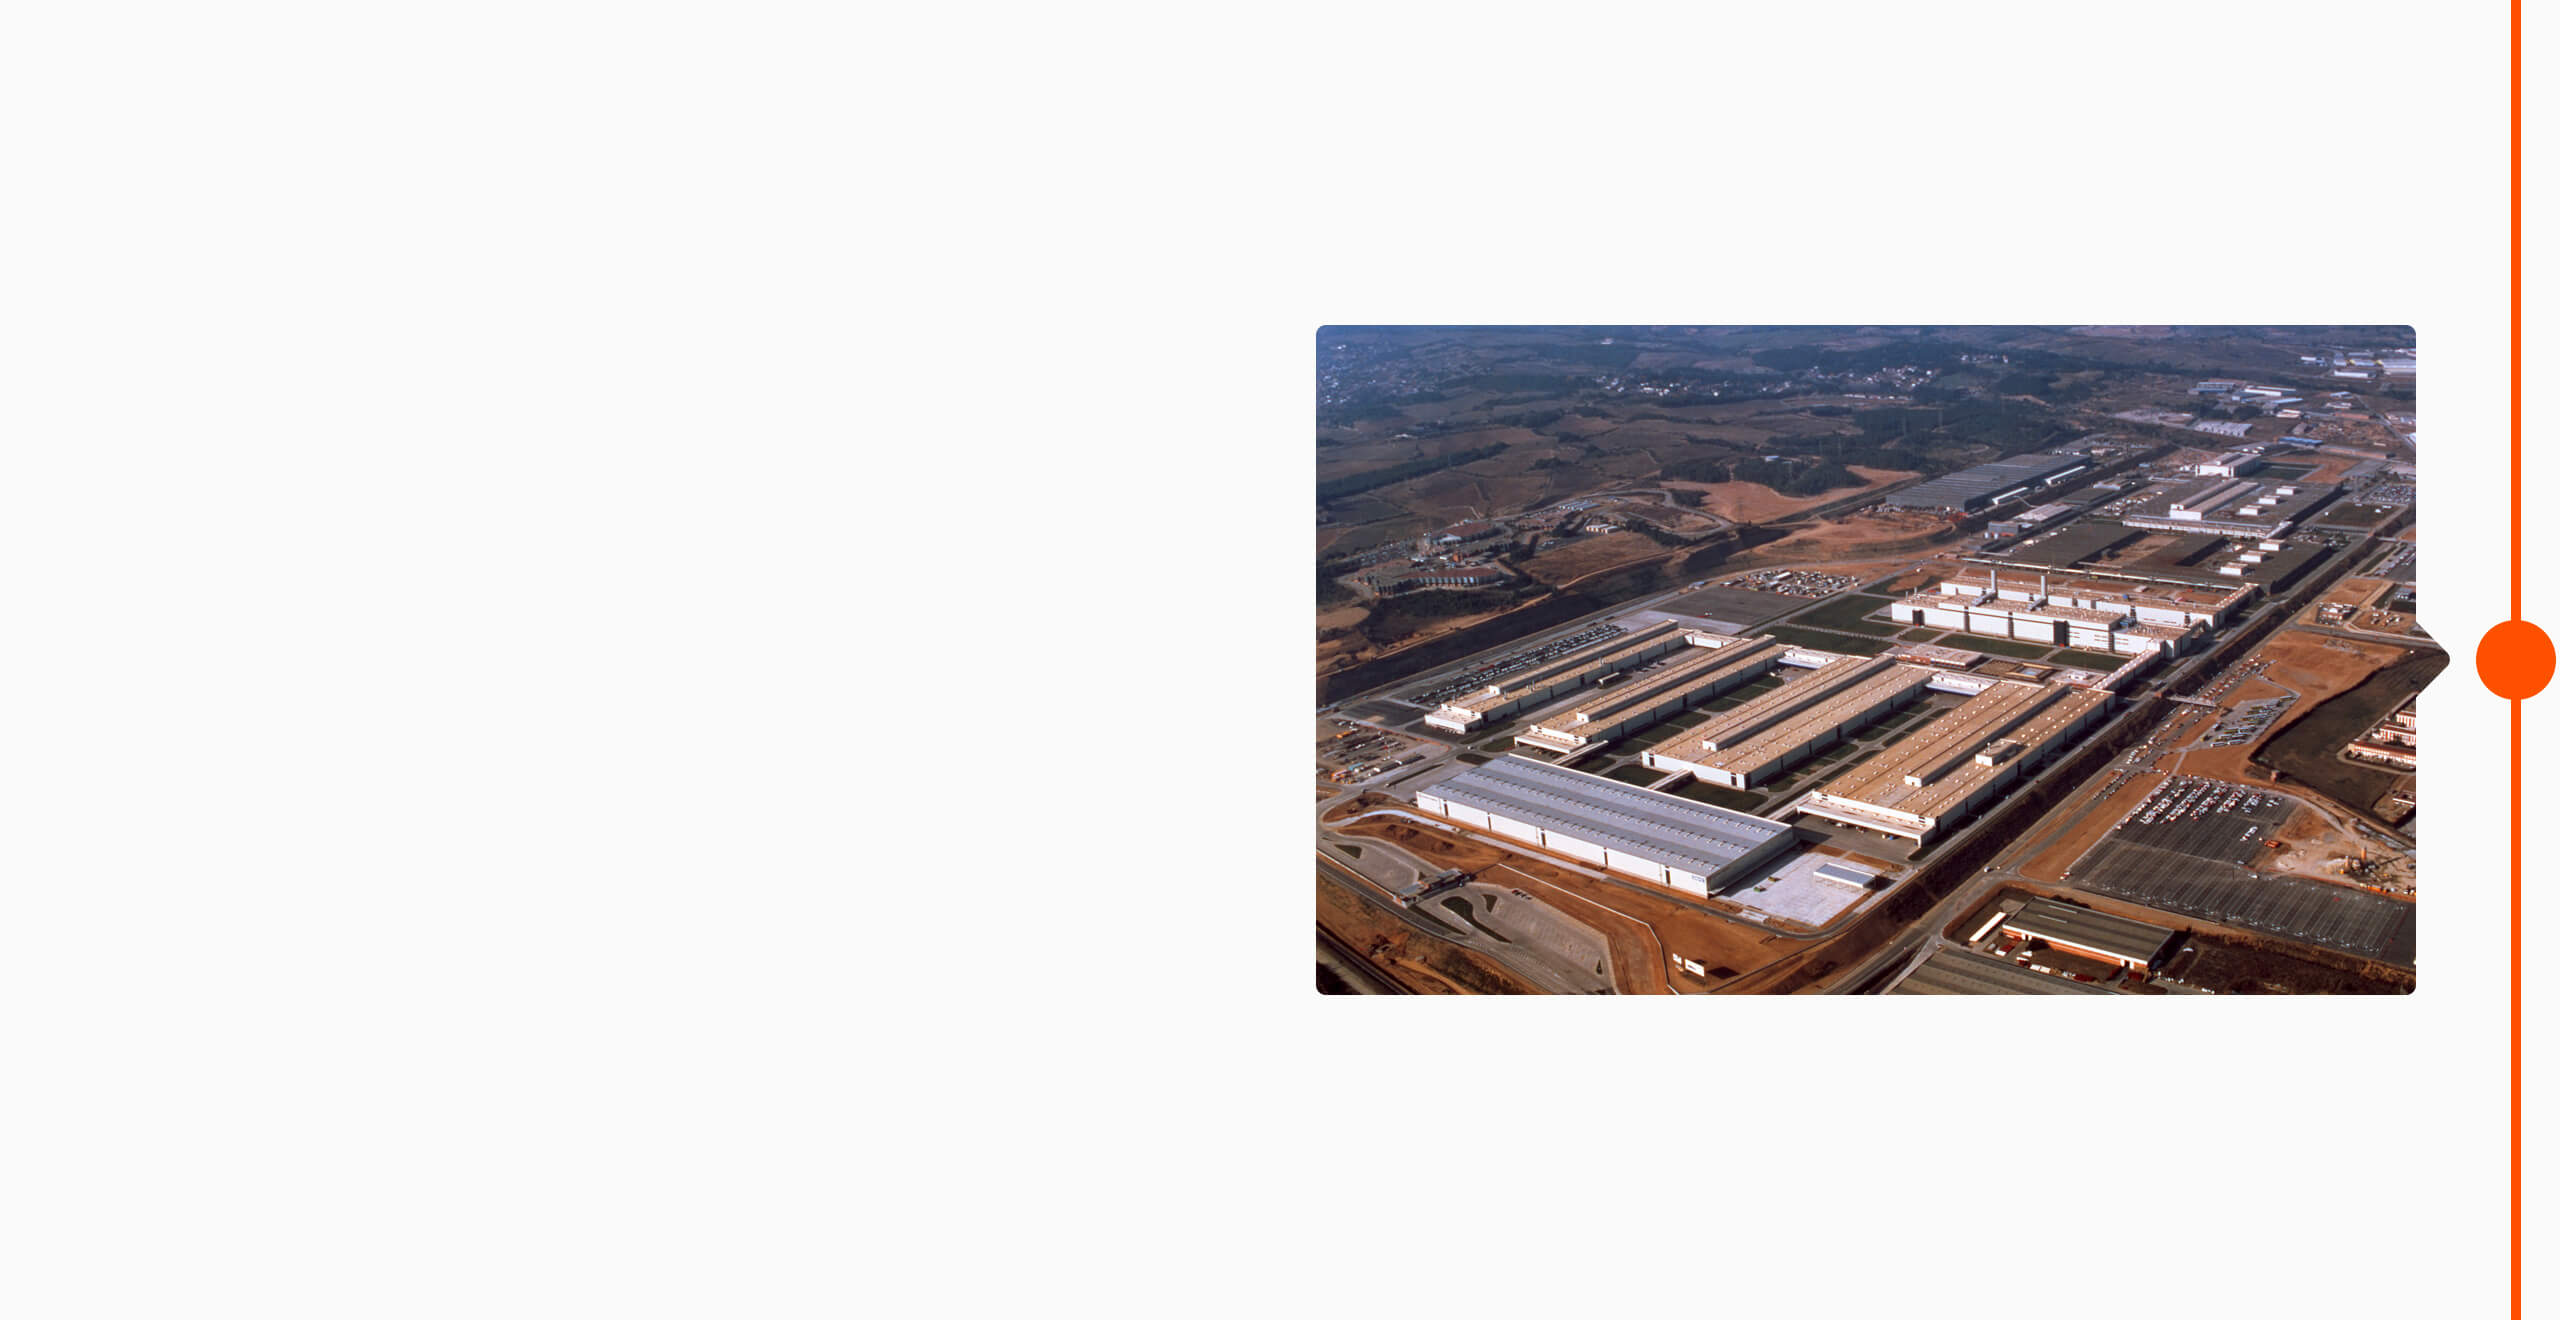 La storia del marchio SEAT: 1989 - La costruzione dello stabilimento di Martorell